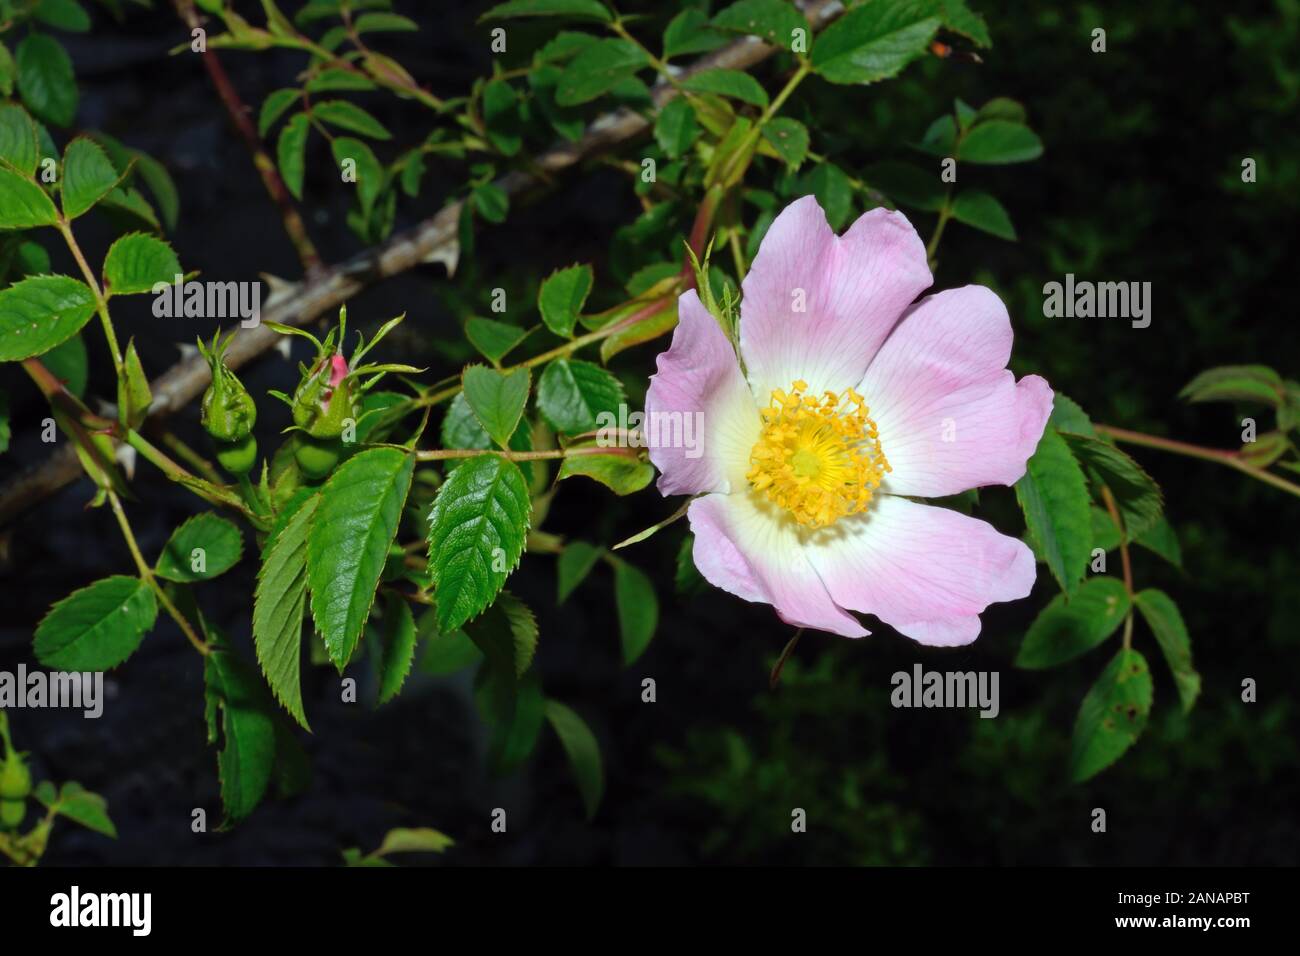 Rosa canina (dog rose) es nativo de Europa, Noroeste de África y Asia occidental donde la codificación es un arbusto de hoja caduca. Foto de stock